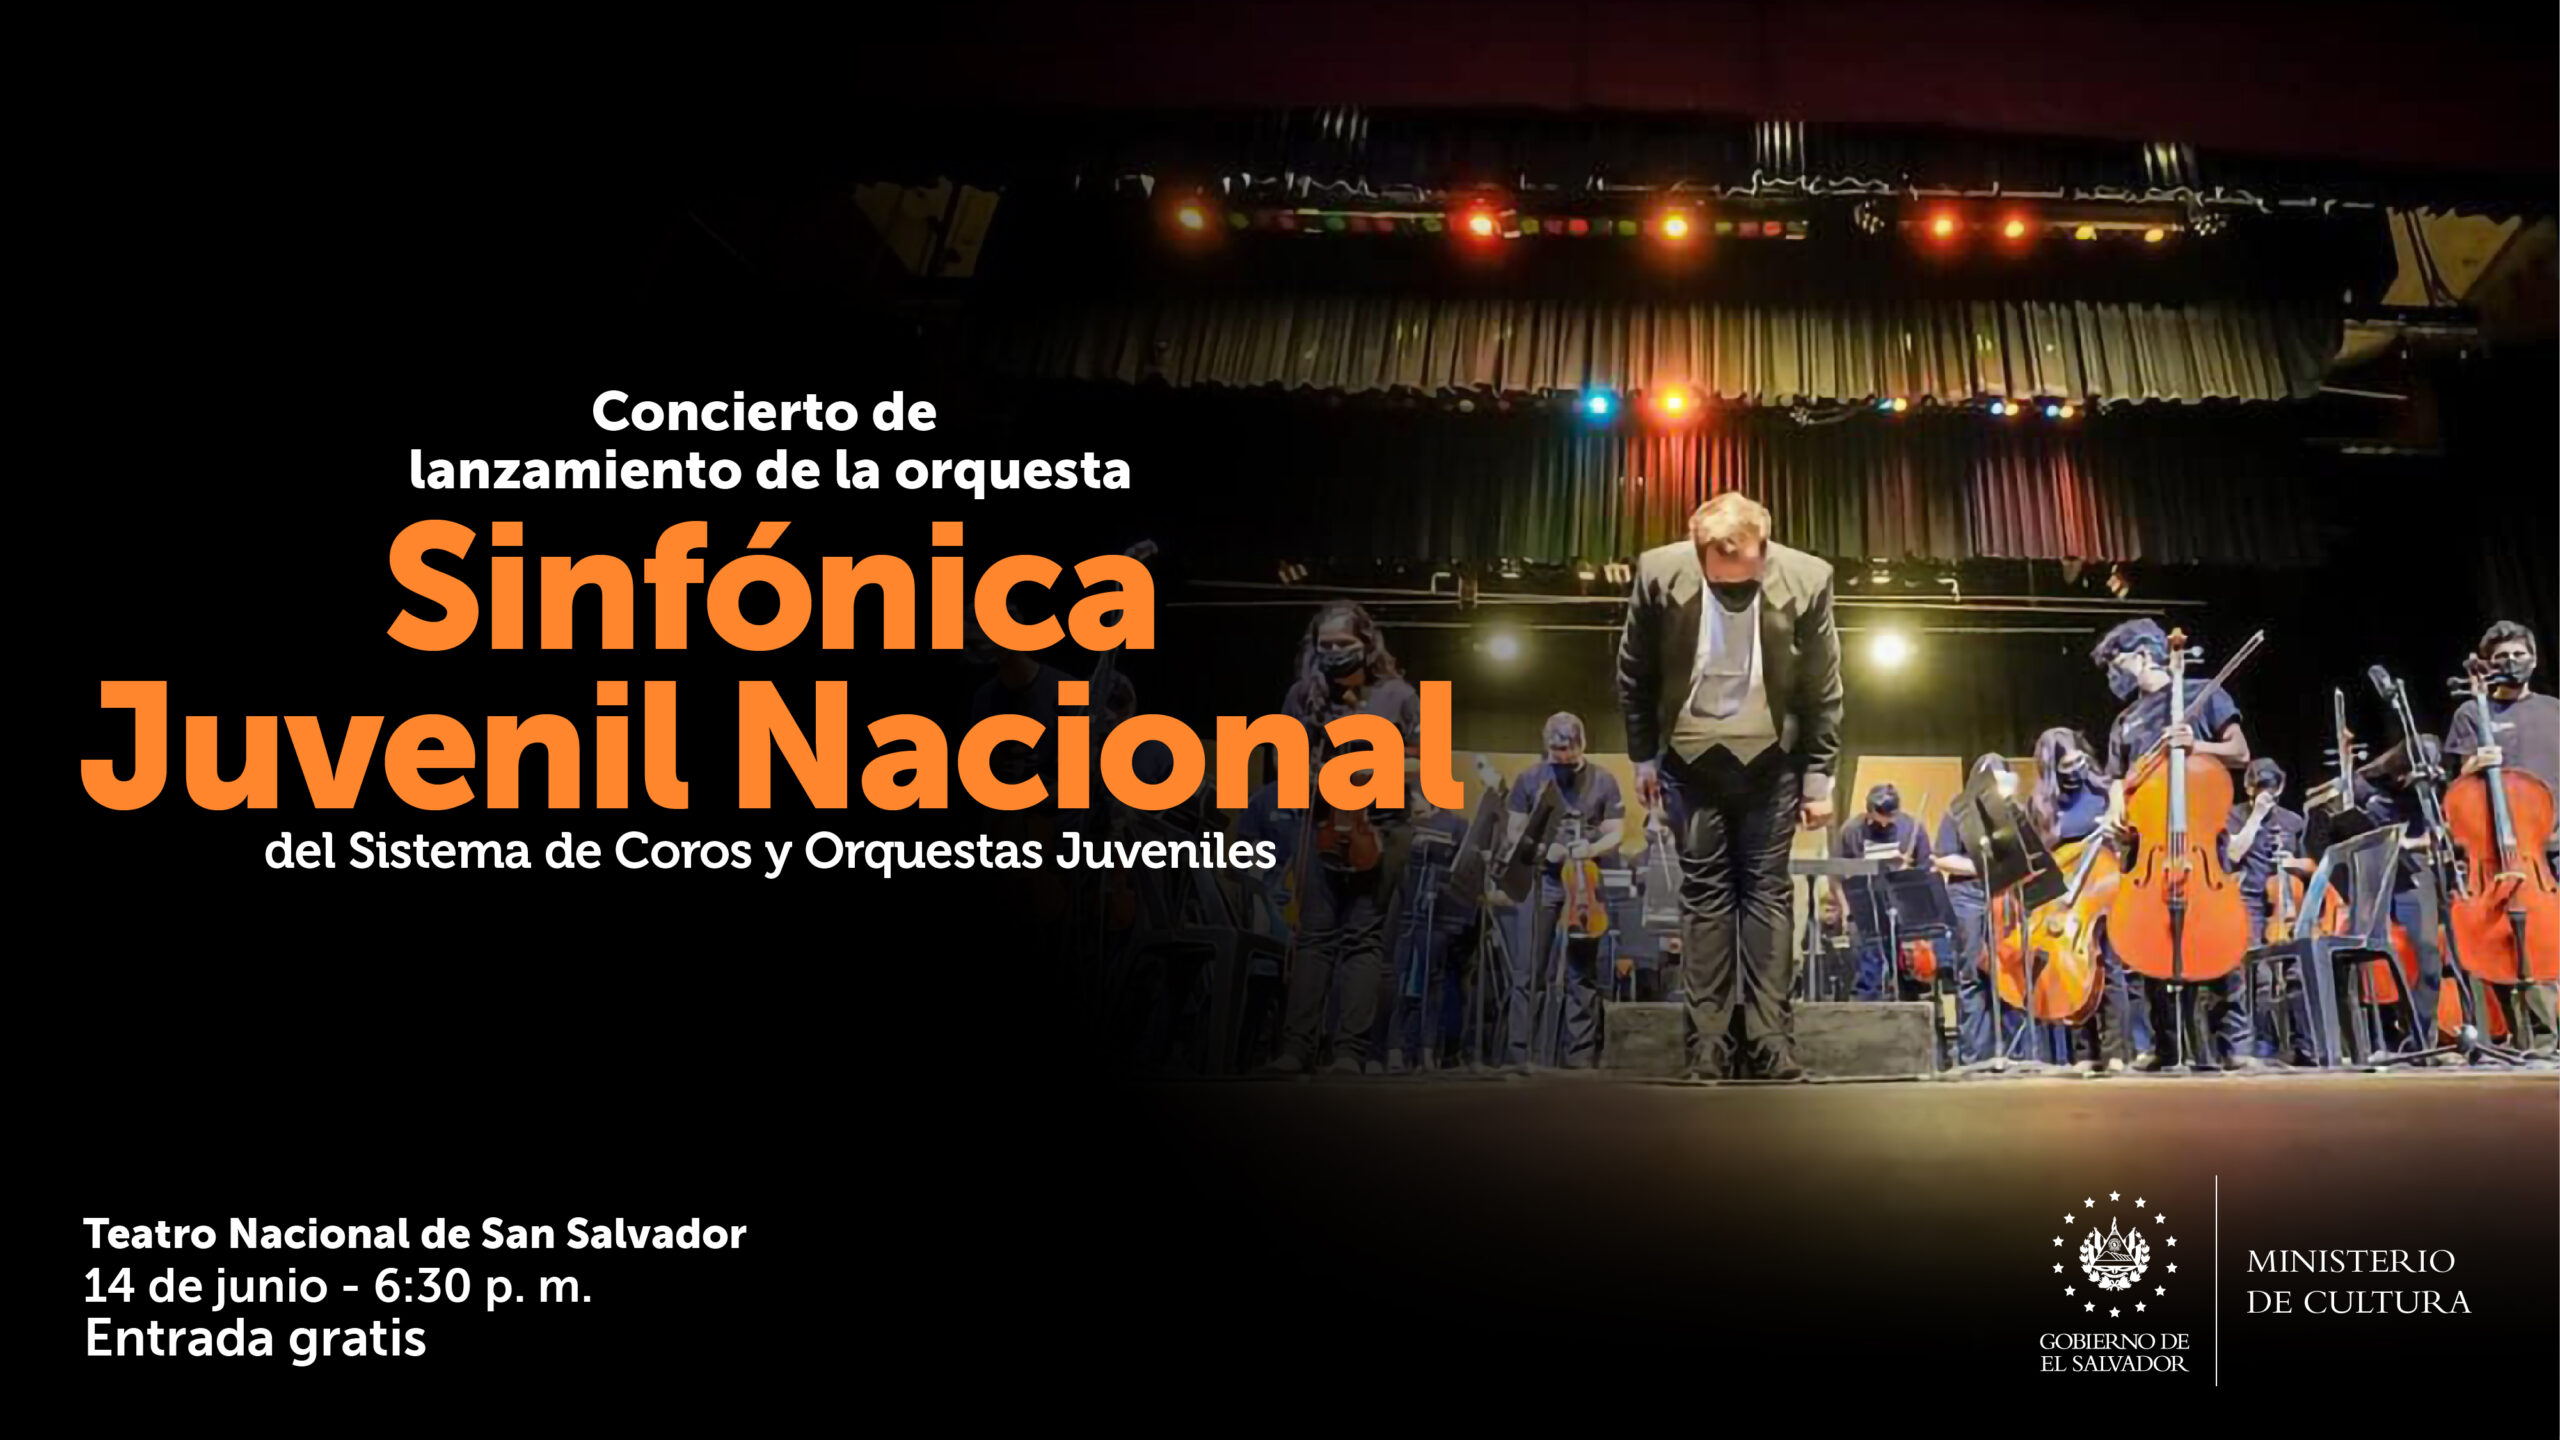 Orquesta Sinfónica Juvenil Nacional debuta esta tarde en el Teatro Nacional de San Salvador